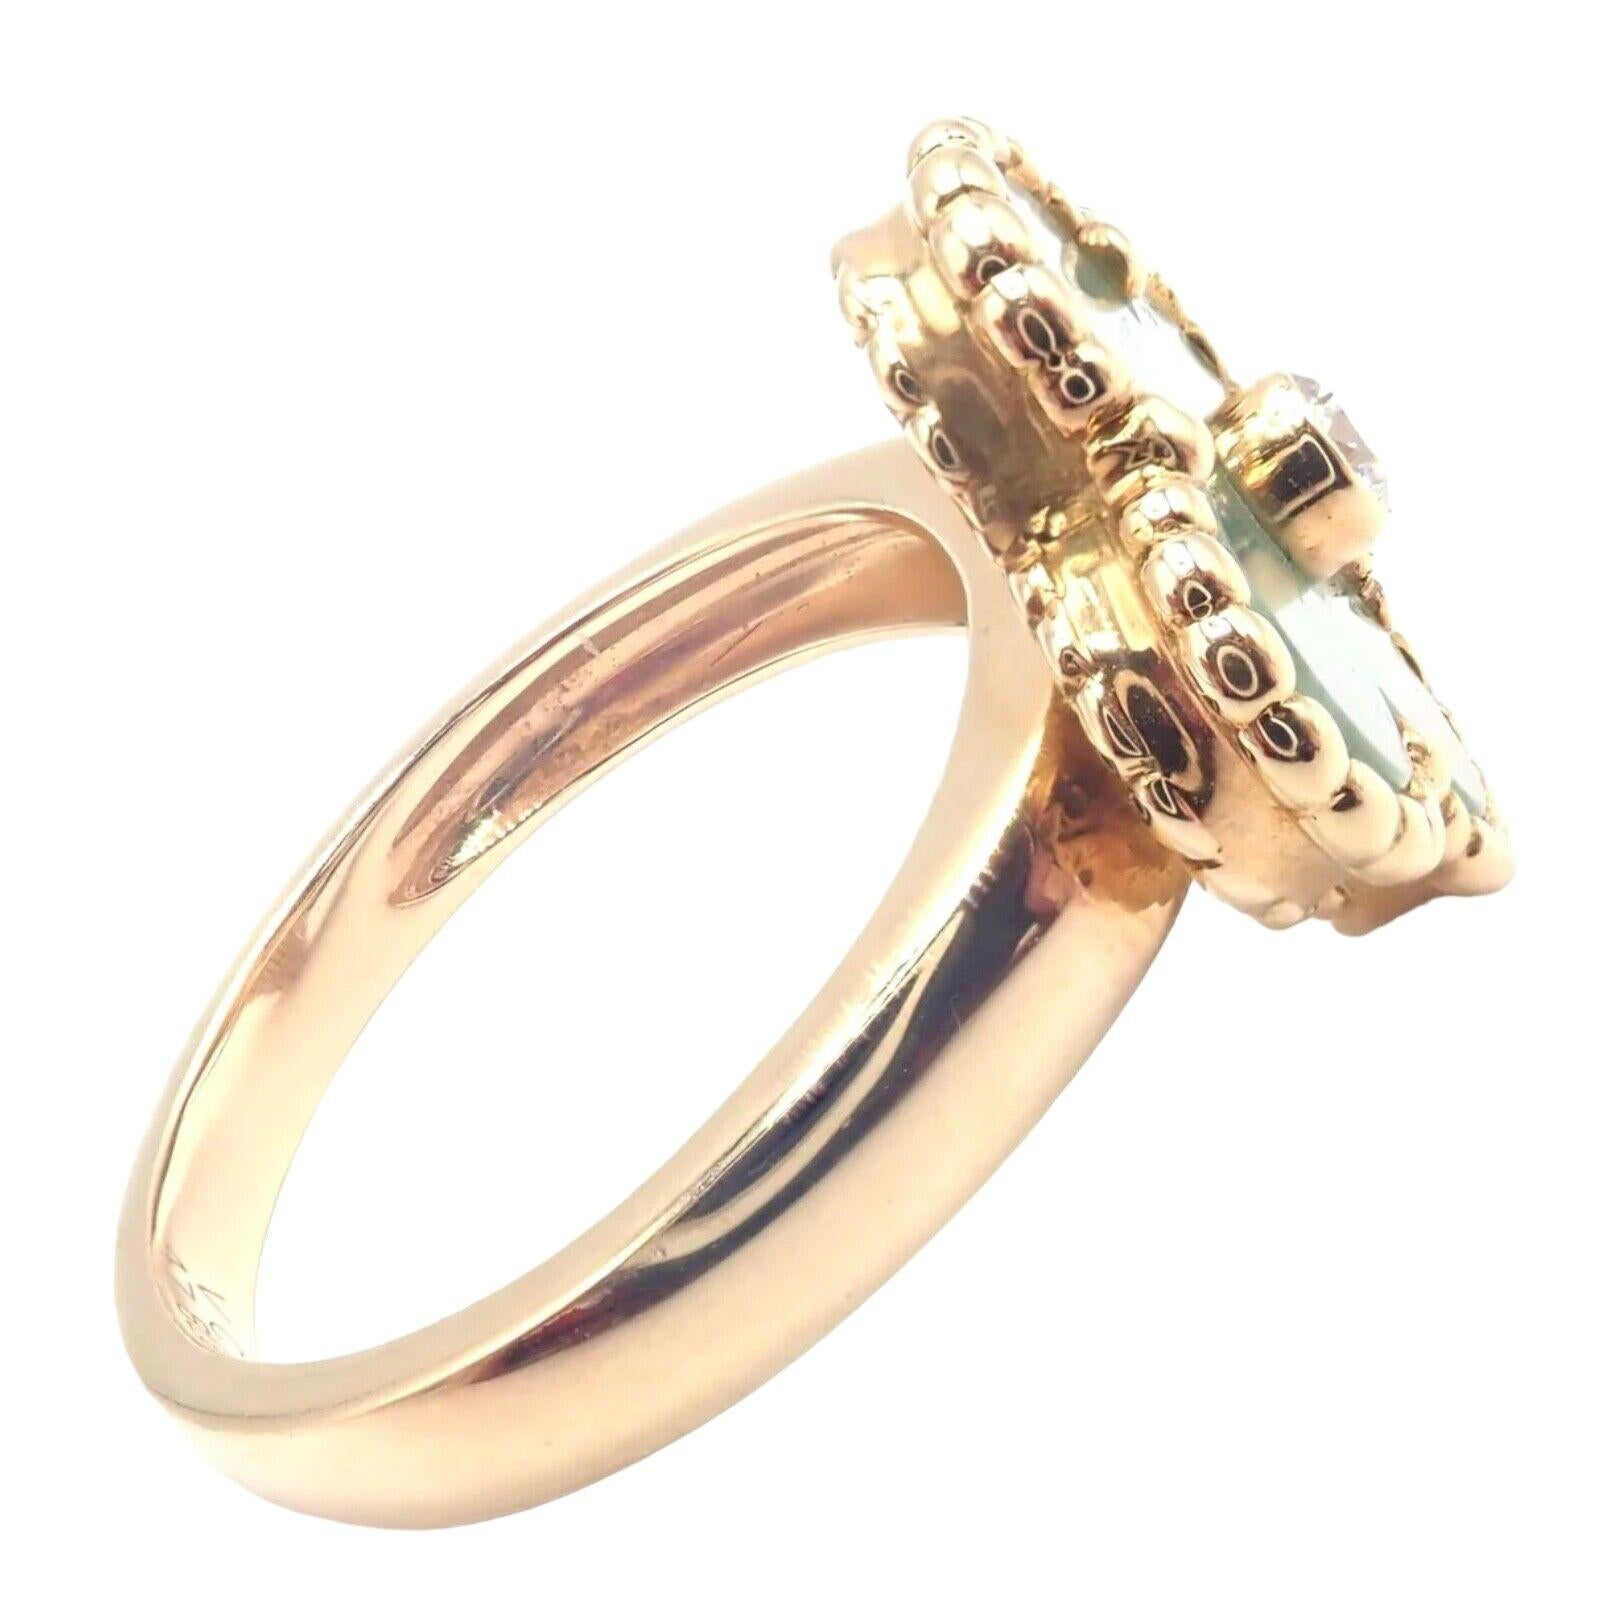 Van Cleef & Arpels Vintage Alhambra 18k Gelbgold Diamant Jade Ring.
Der zertifizierte Van Cleef & Arpels Vintage Alhambra Ring aus 18 Karat Gelbgold mit Diamanten und Jade ist ein prächtiges Stück, das traditionelle Eleganz mit zeitgenössischem